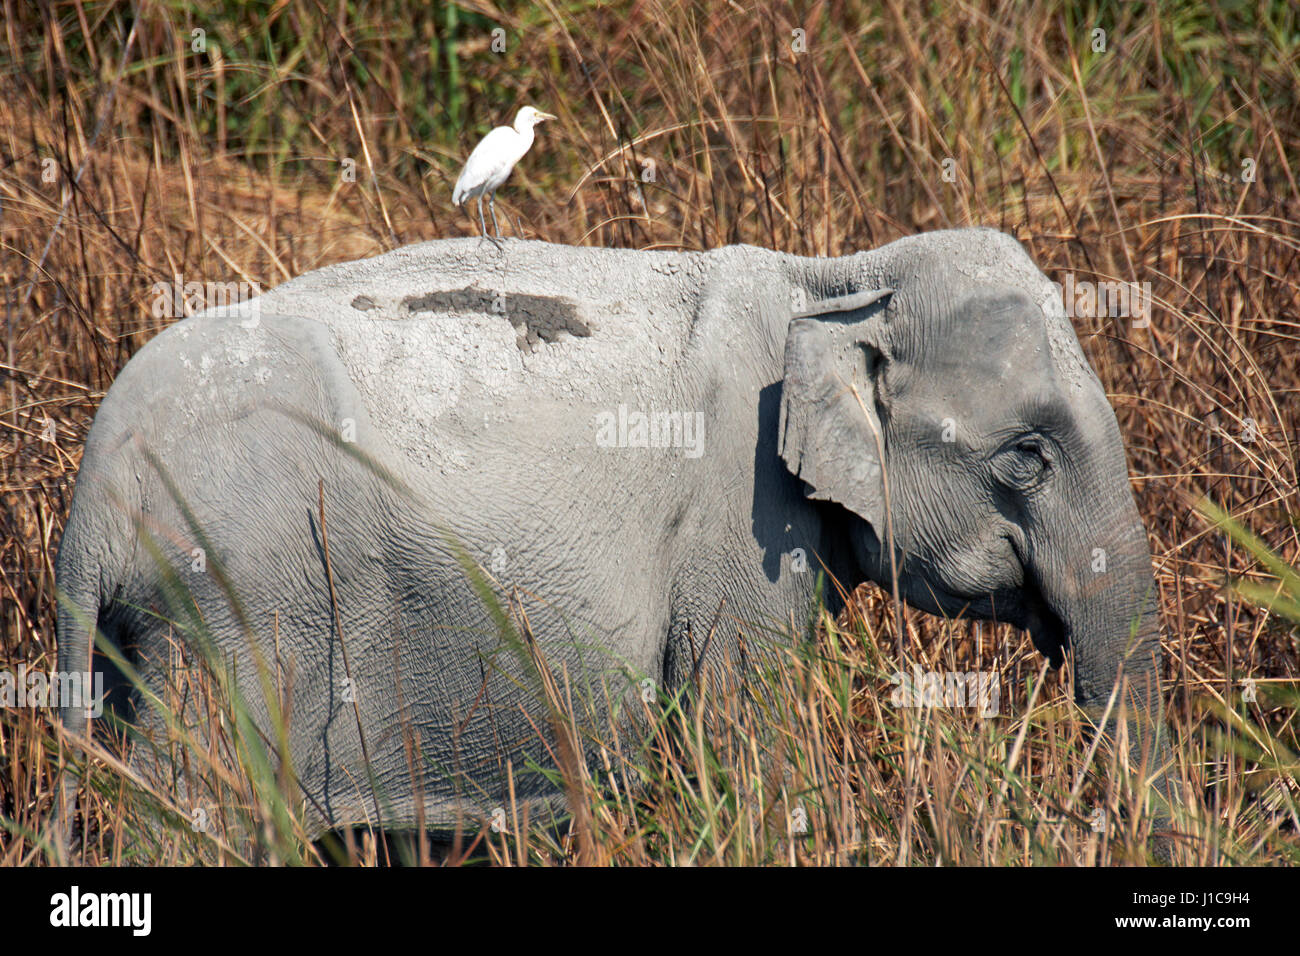 Wild Éléphant d'Asie (Elephas maximus indicus) dans l'herbe d'éléphant au parc national de Kaziranga Assam en Inde Banque D'Images